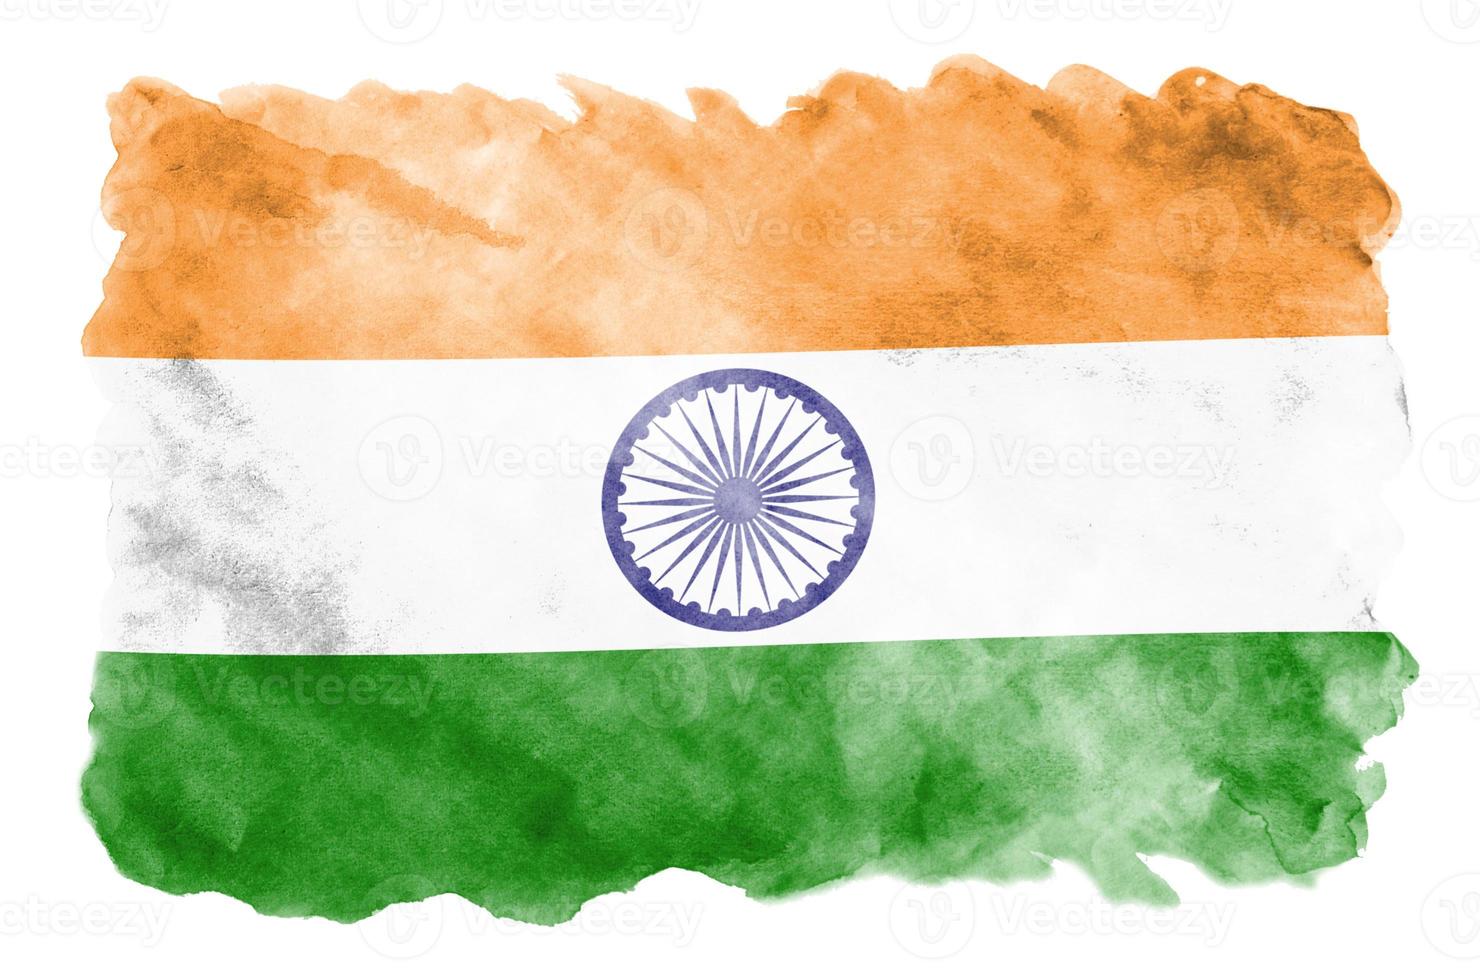 bandeira da índia é retratada em estilo aquarela líquido isolado no fundo branco foto